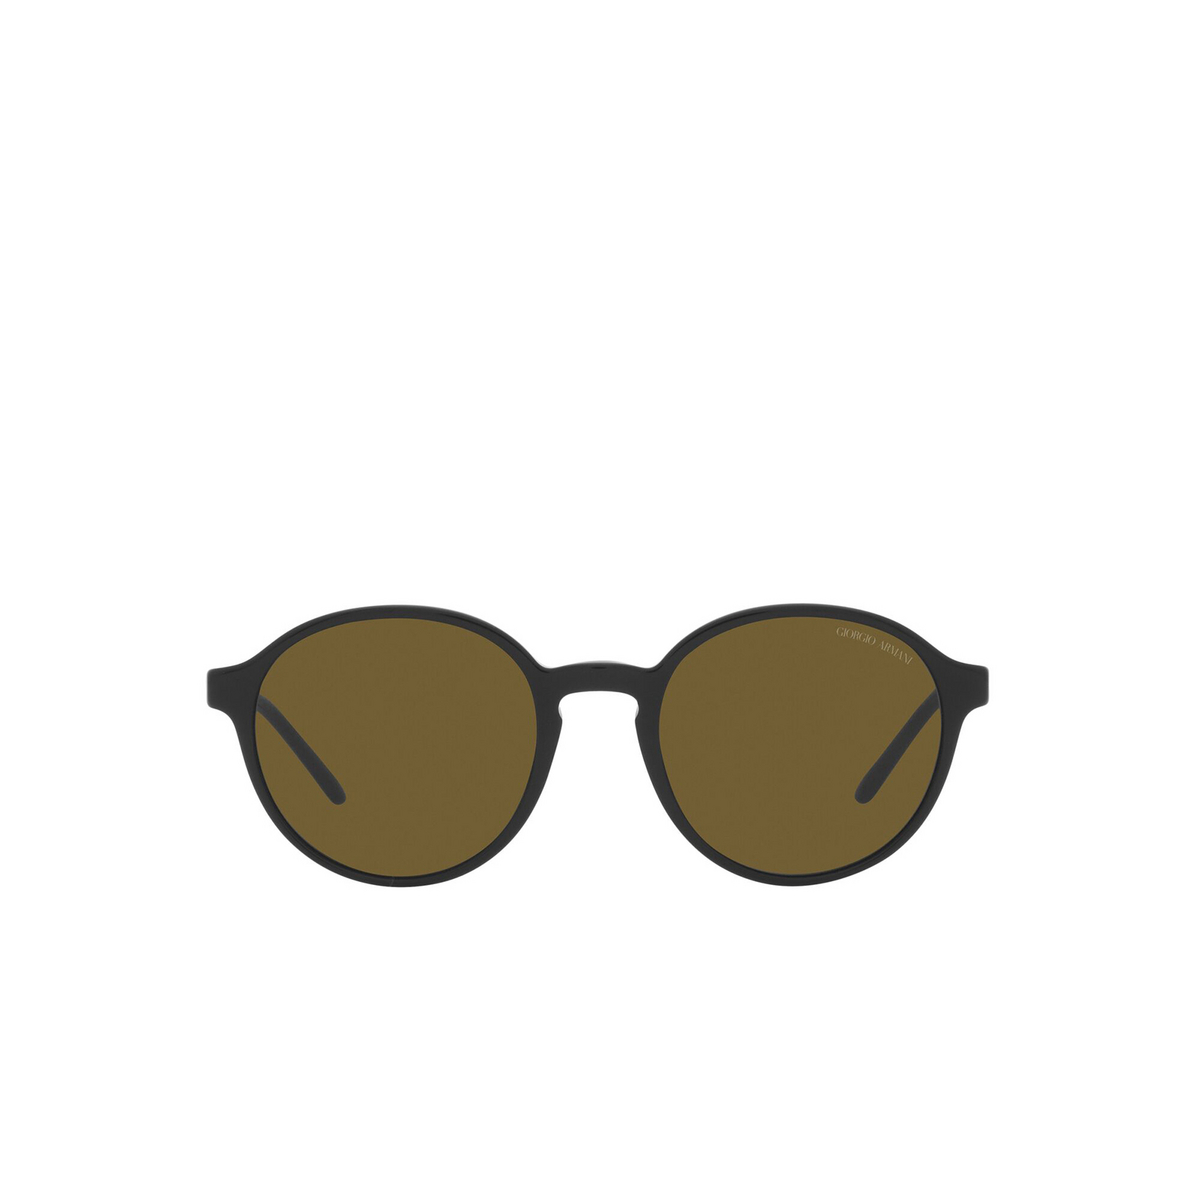 Giorgio Armani® Round Sunglasses: AR8160 color Black 500173 - front view.